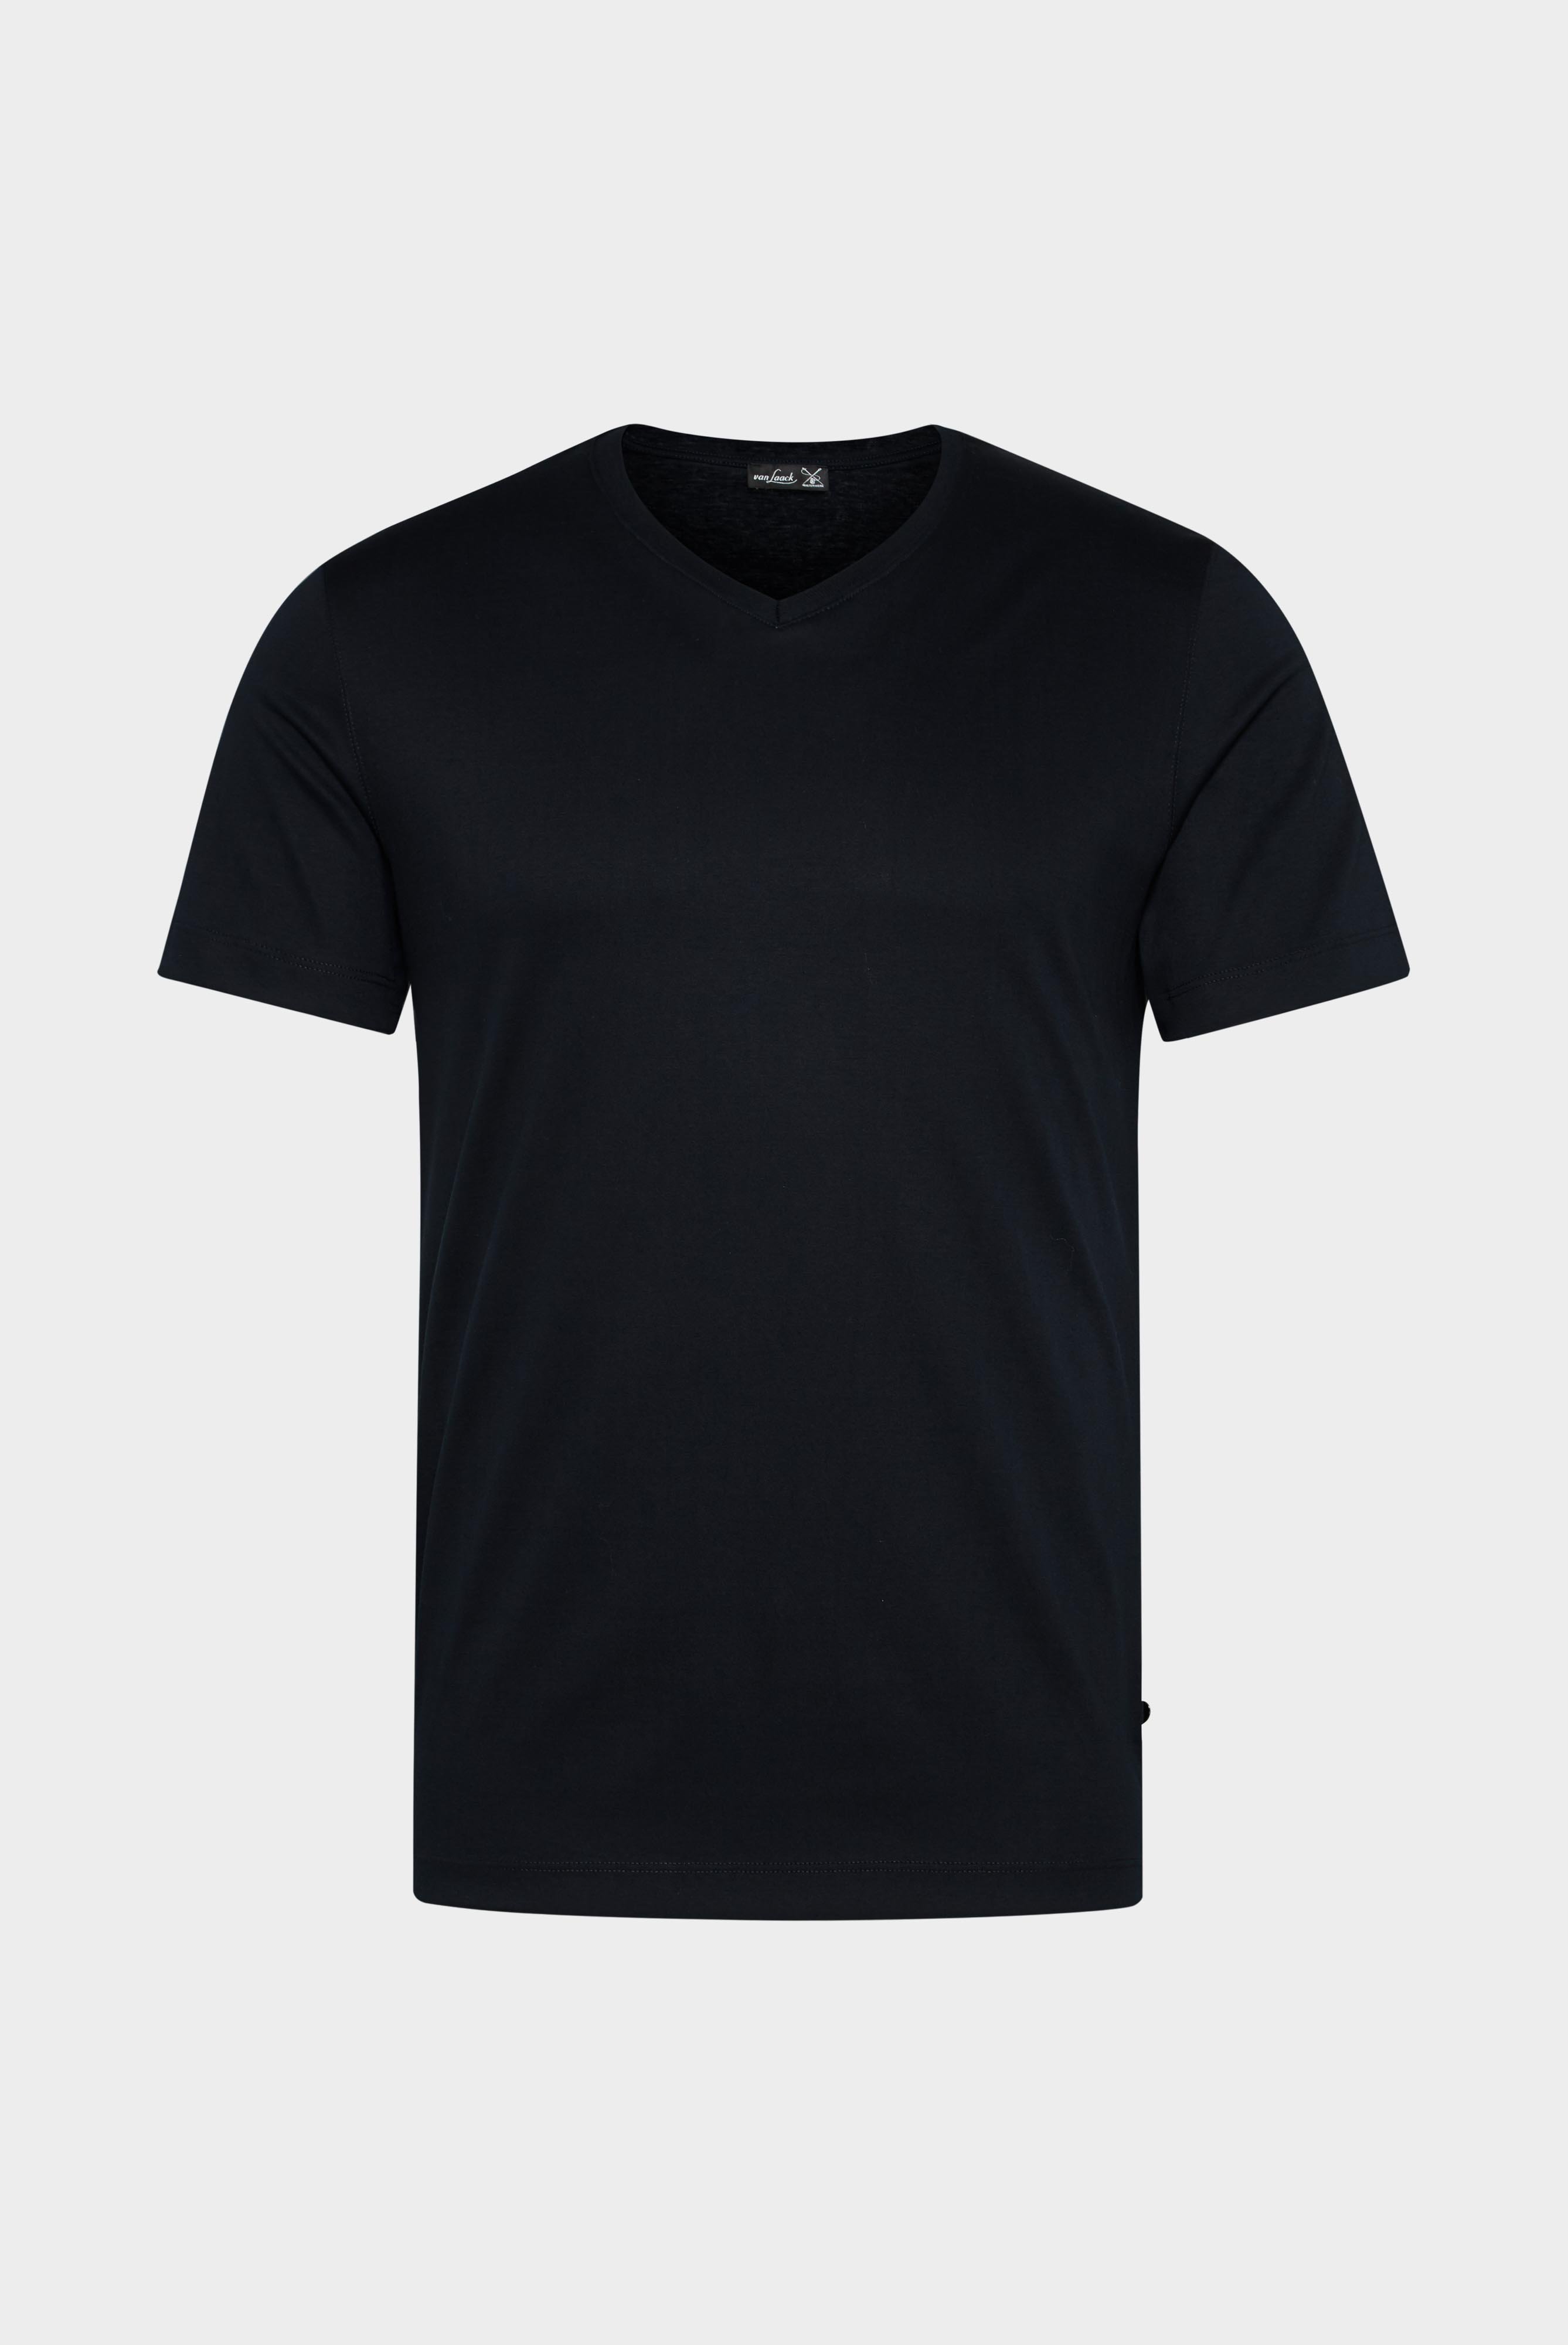 T-Shirts+V-Ausschnitt Jersey T-Shirt Slim Fit+20.1715.UX.180031.790.L